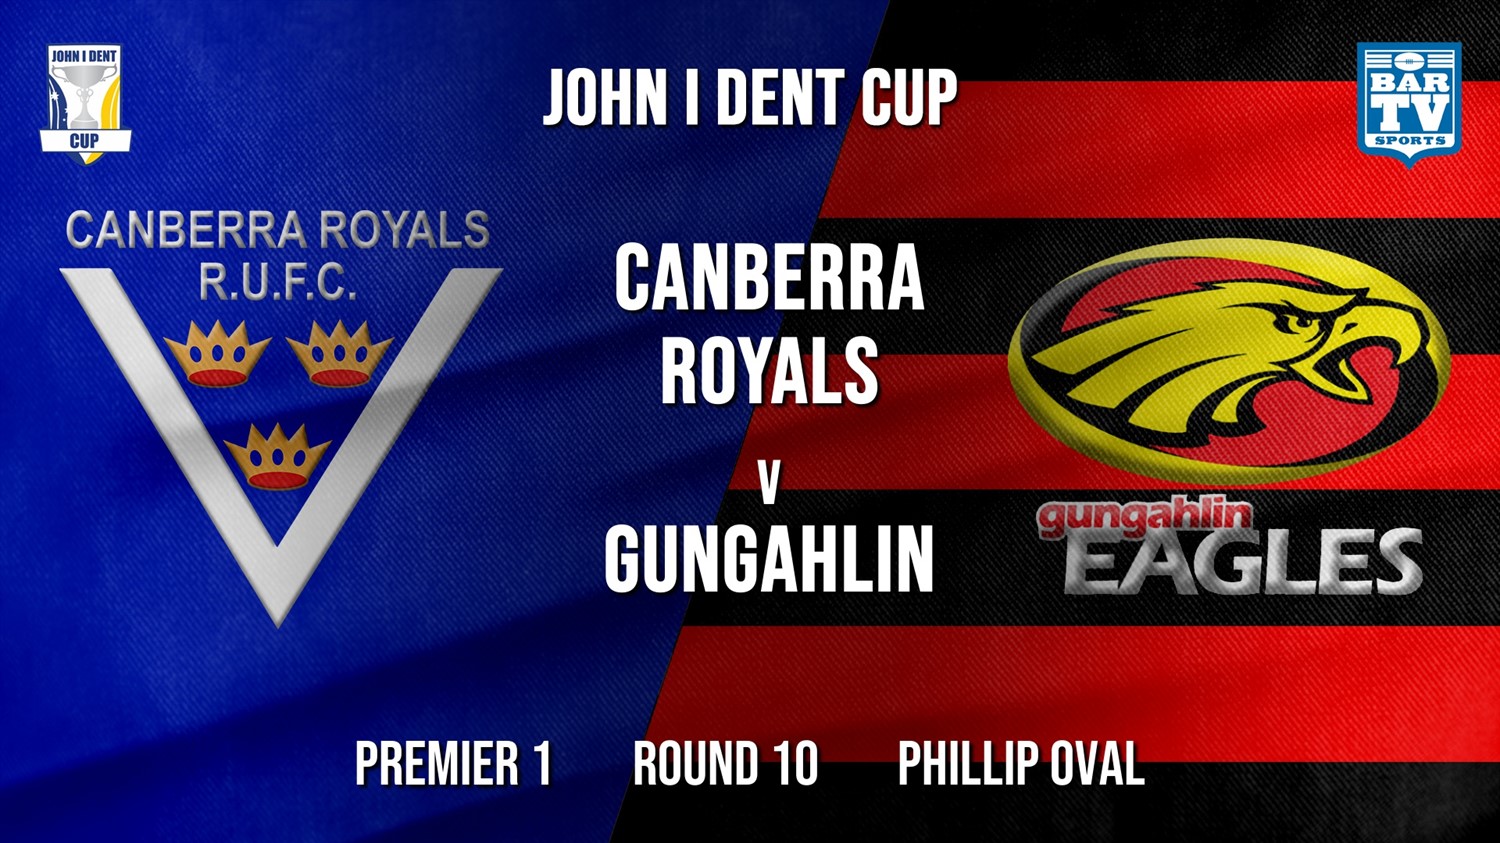 John I Dent Round 10 - Premier 1 - Canberra Royals v Gungahlin Eagles Minigame Slate Image